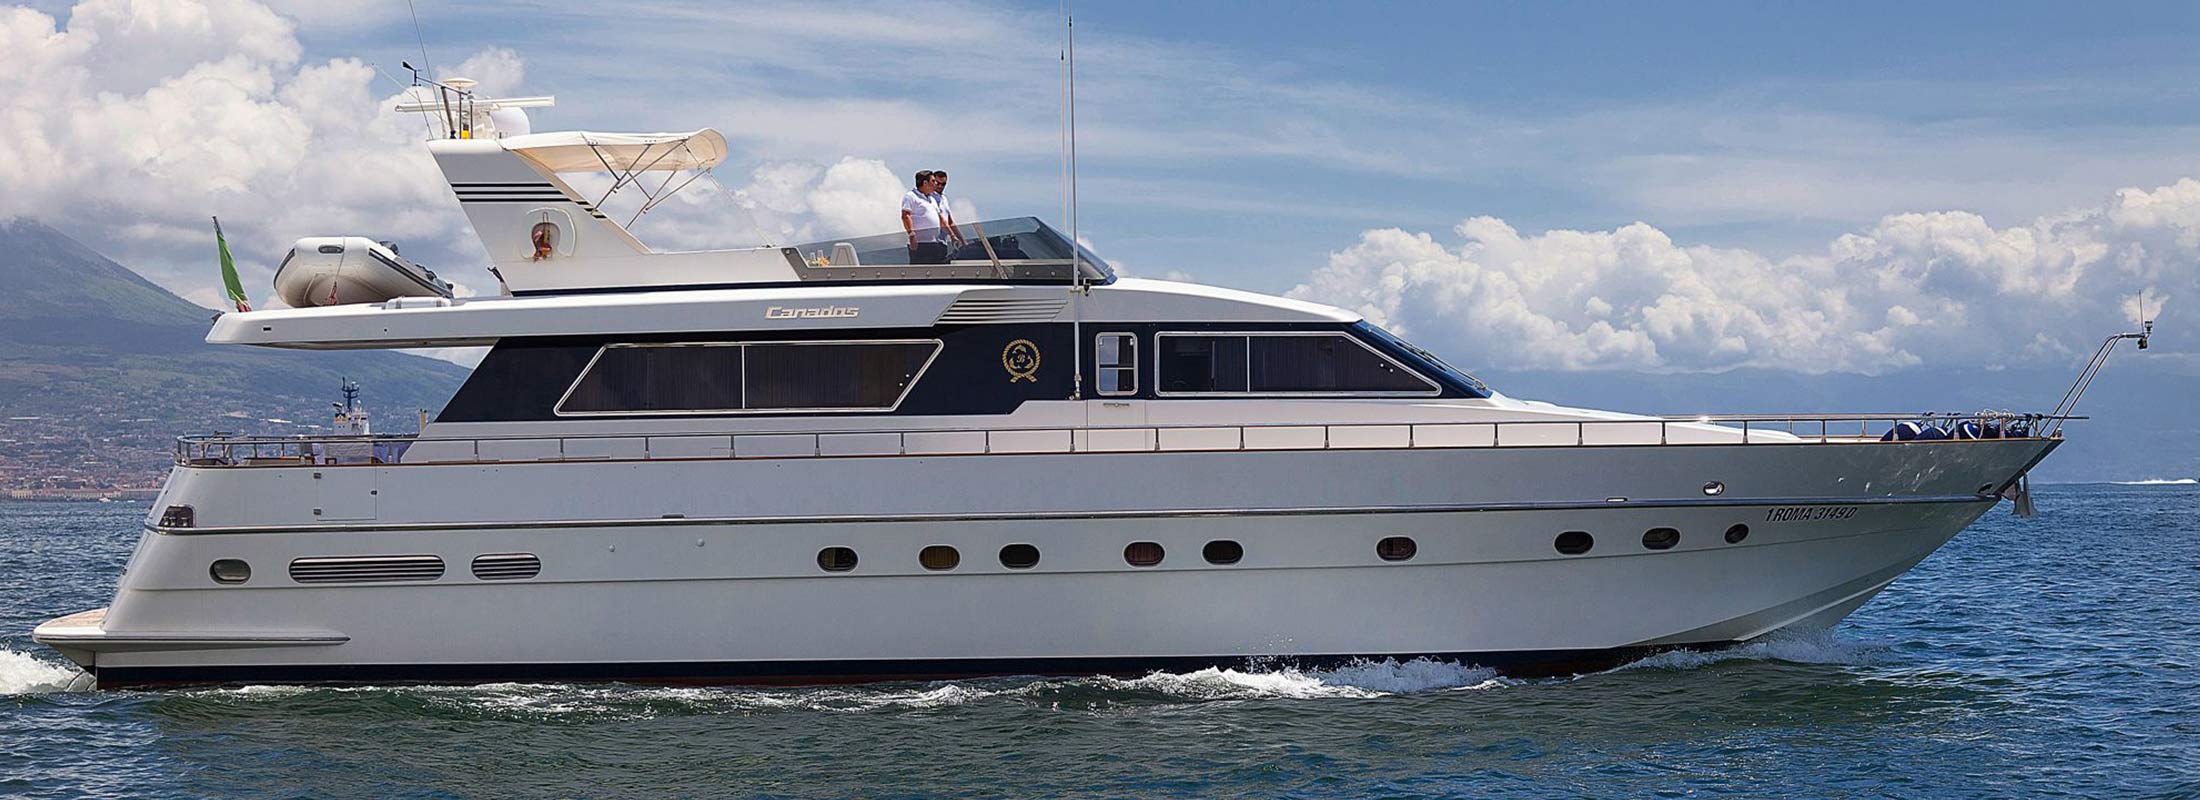 Bernadette Motor Yacht for Charter Mediterranean slider 2